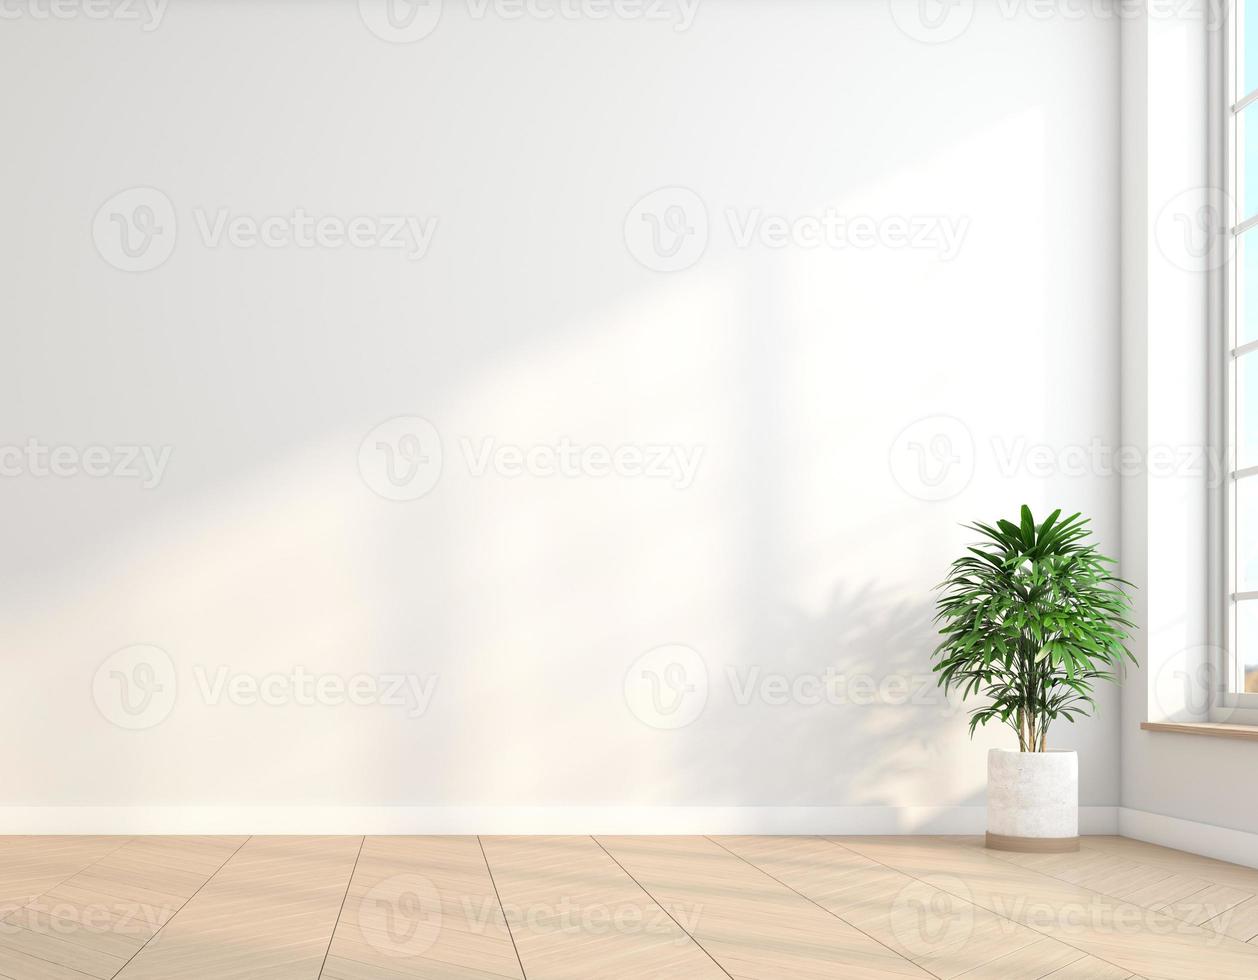 stanza vuota minimalista con parete bianca e pavimento in legno e piante verdi interne. rendering 3D foto